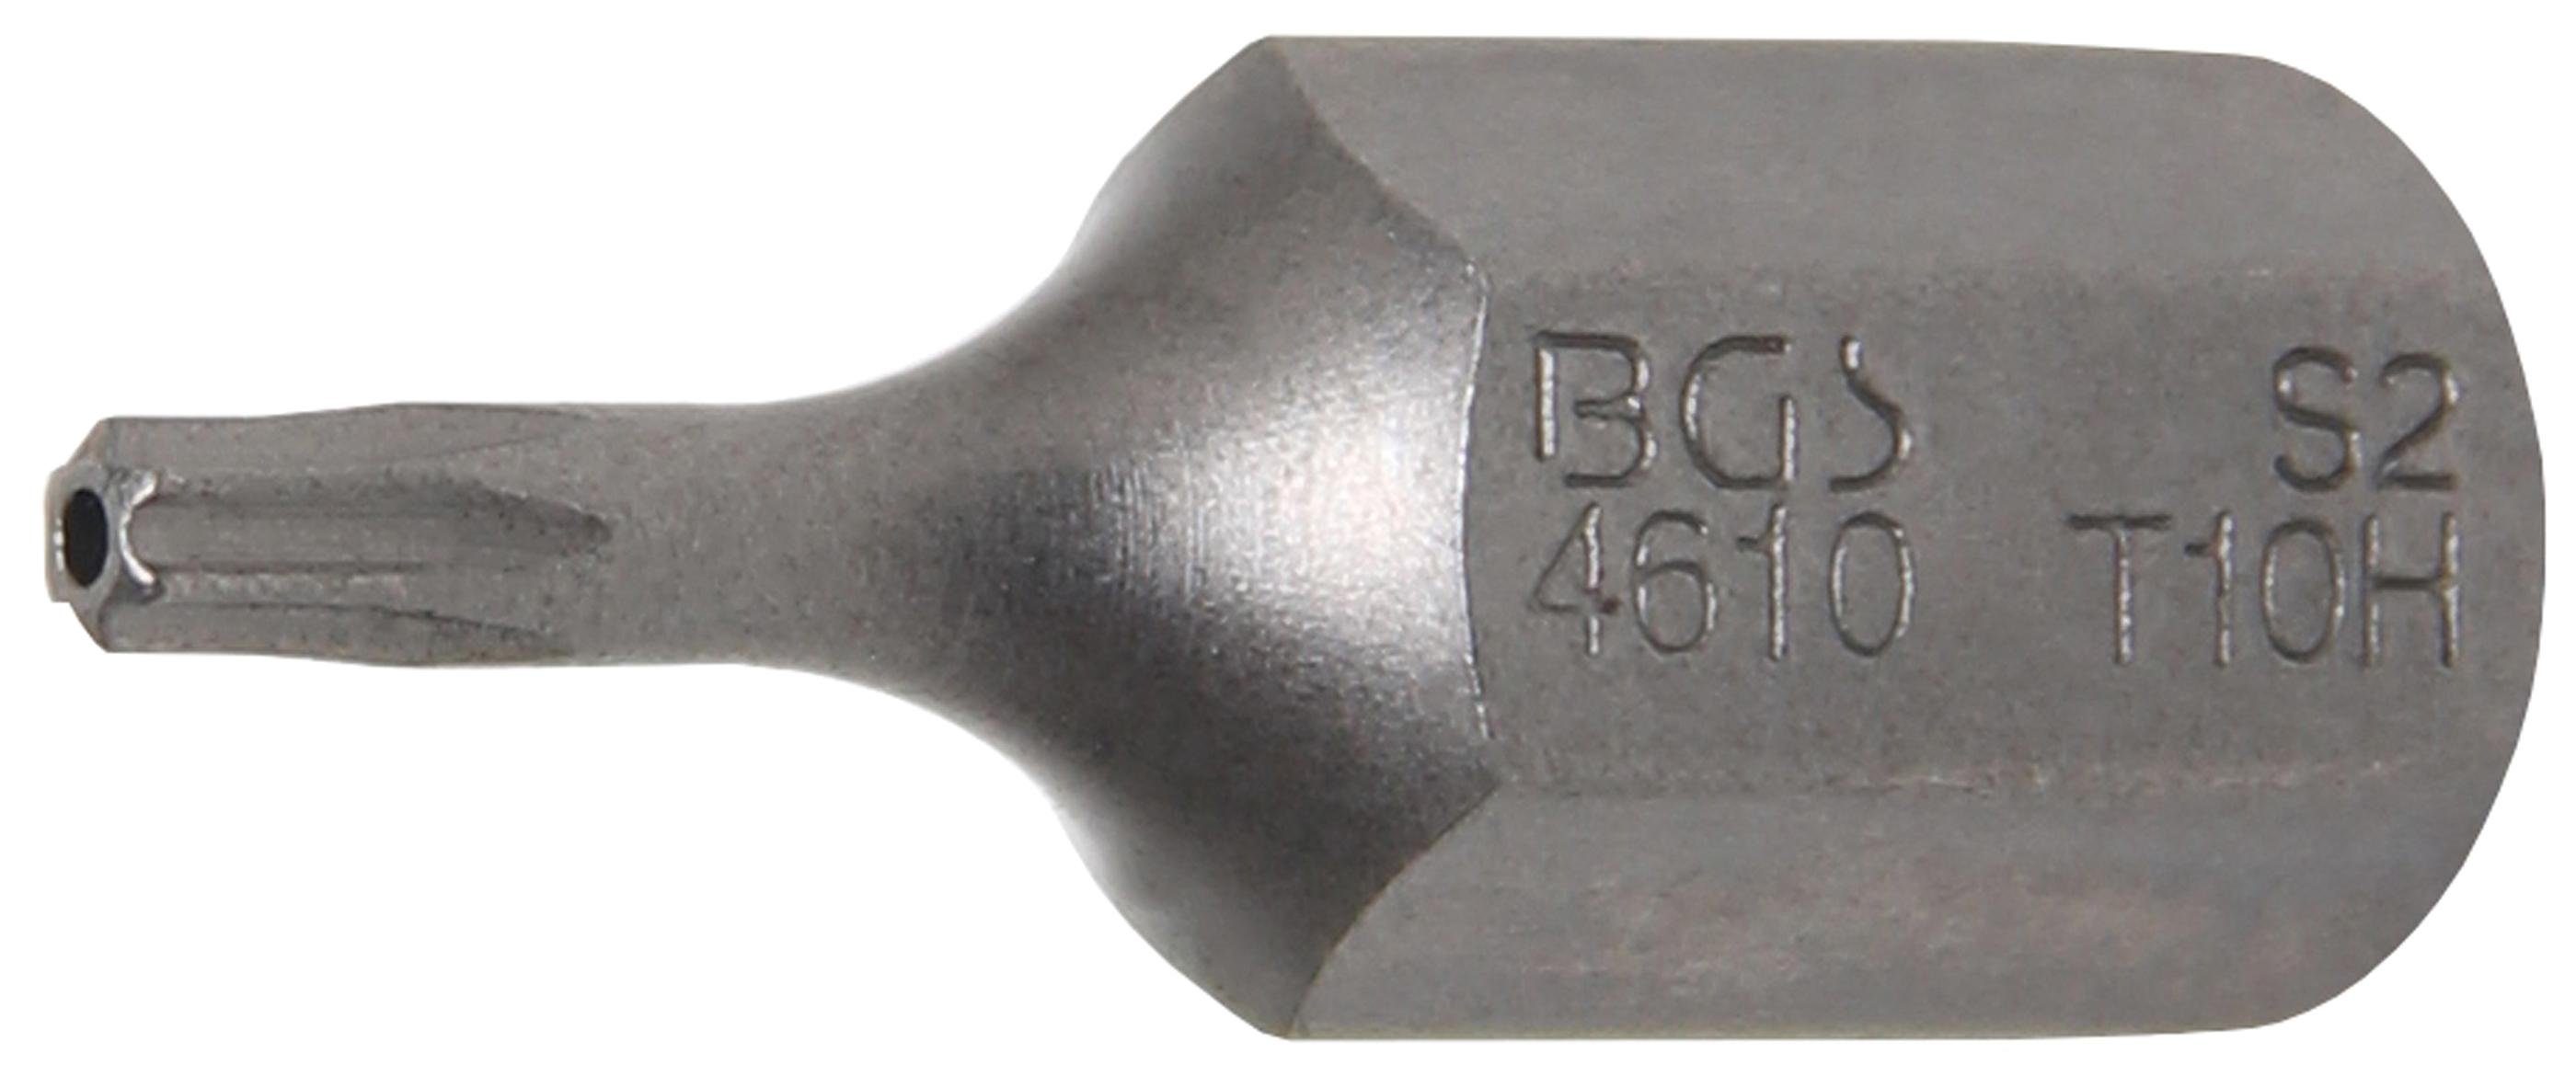 BGS technic Bit-Schraubendreher Bit, Antrieb Außensechskant 10 mm (3/8), T-Profil (für Torx) mit Bohrung T10